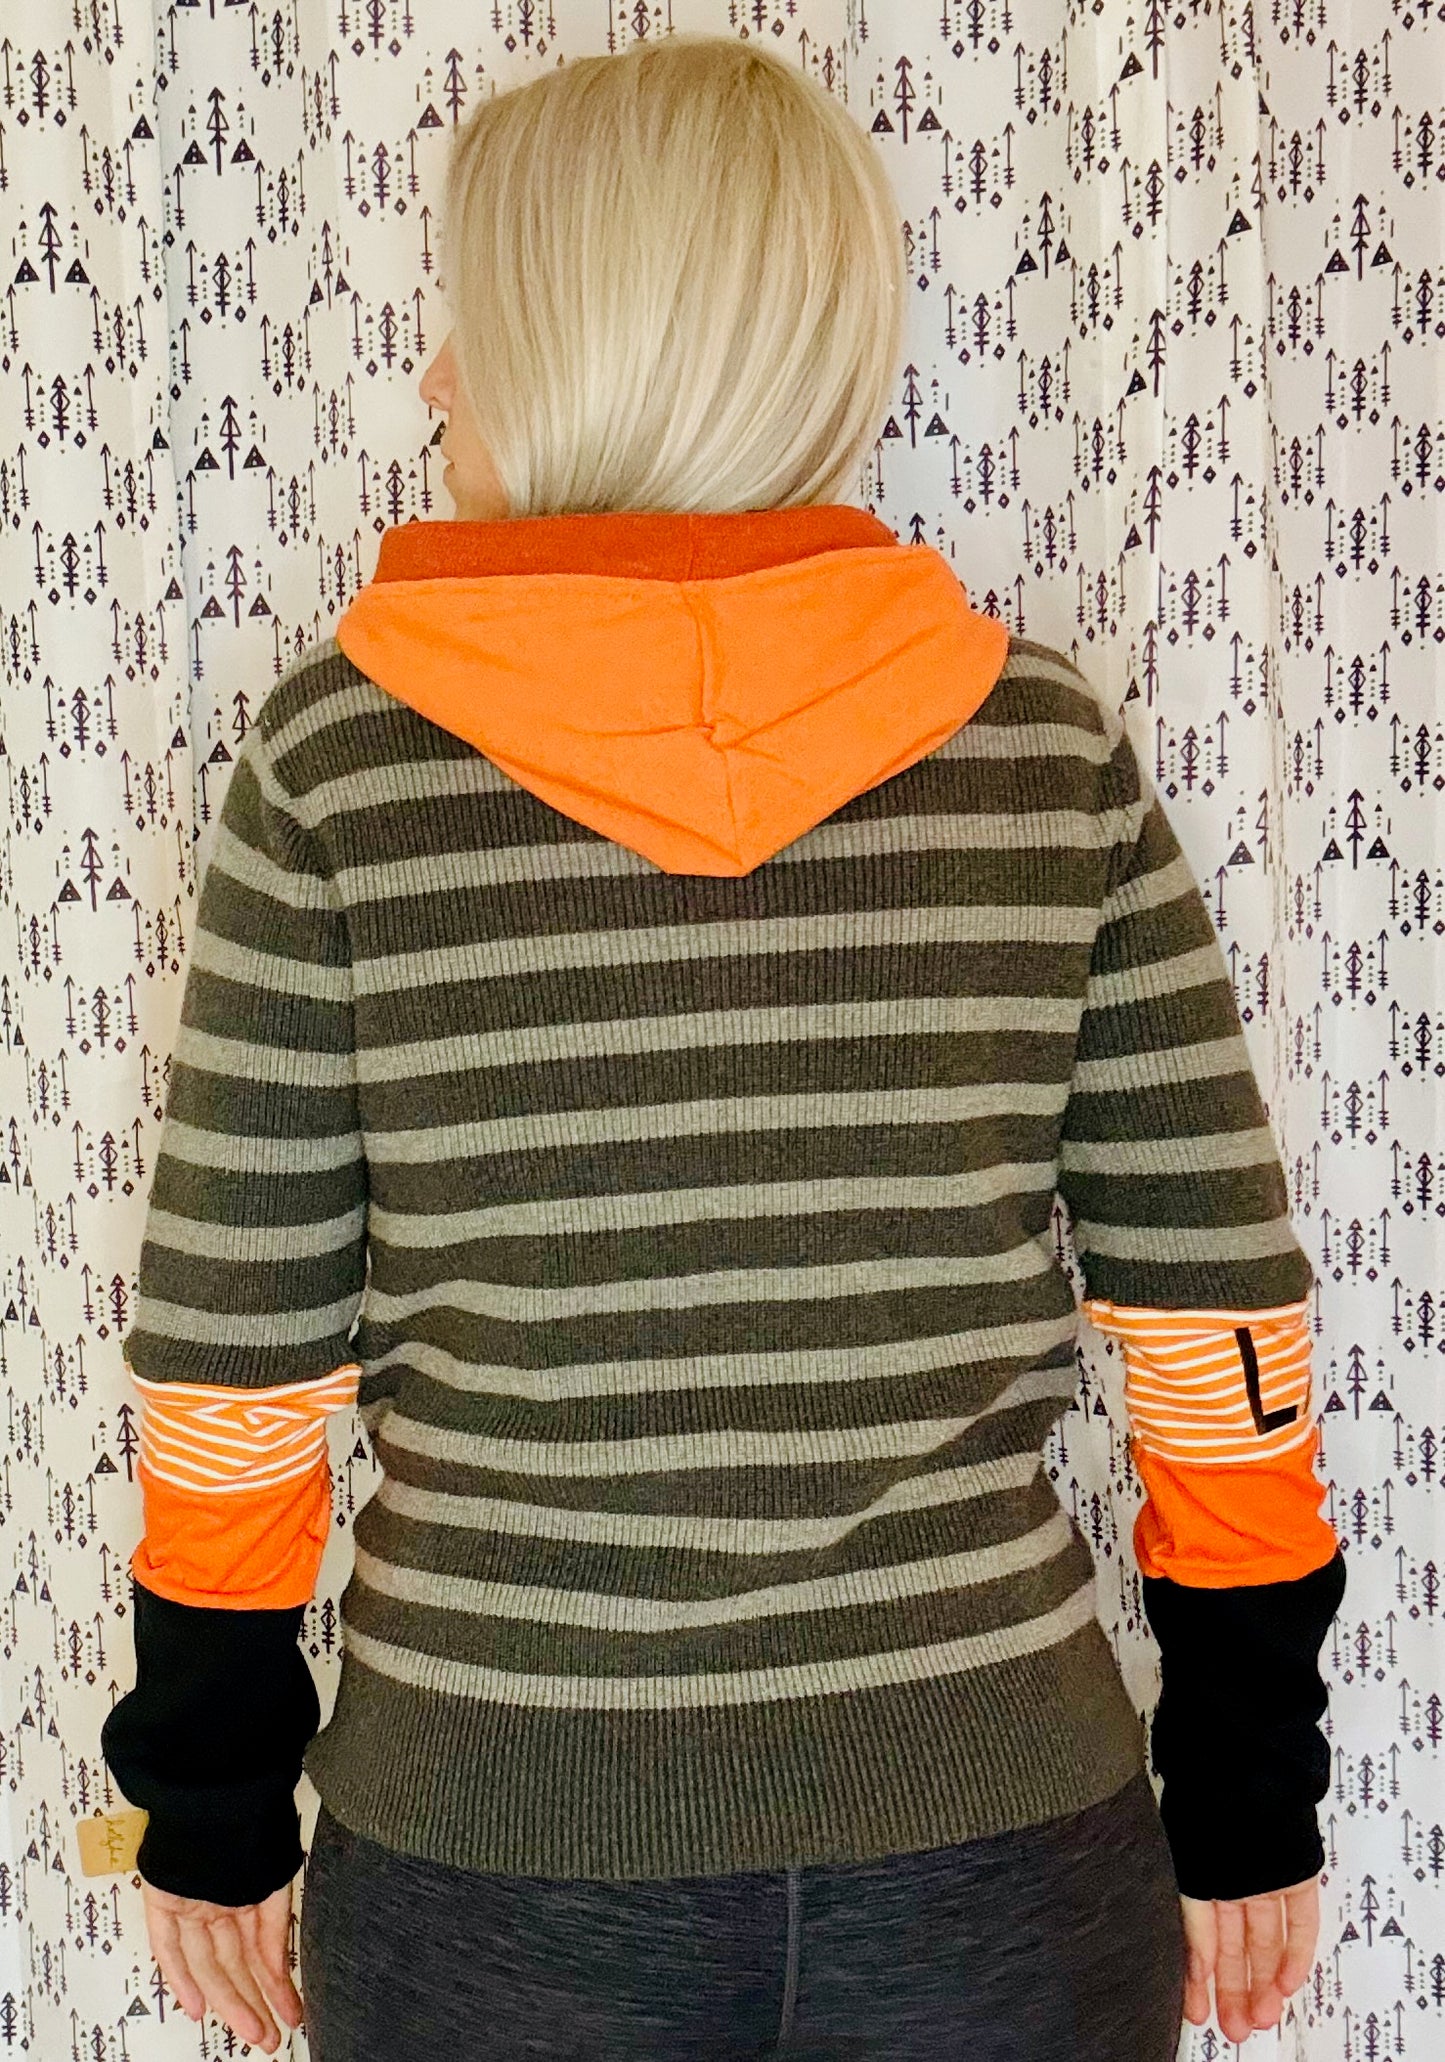 Grey Striped Buffalo Lacrosse Sweater Hoodie Size- Women's S/M